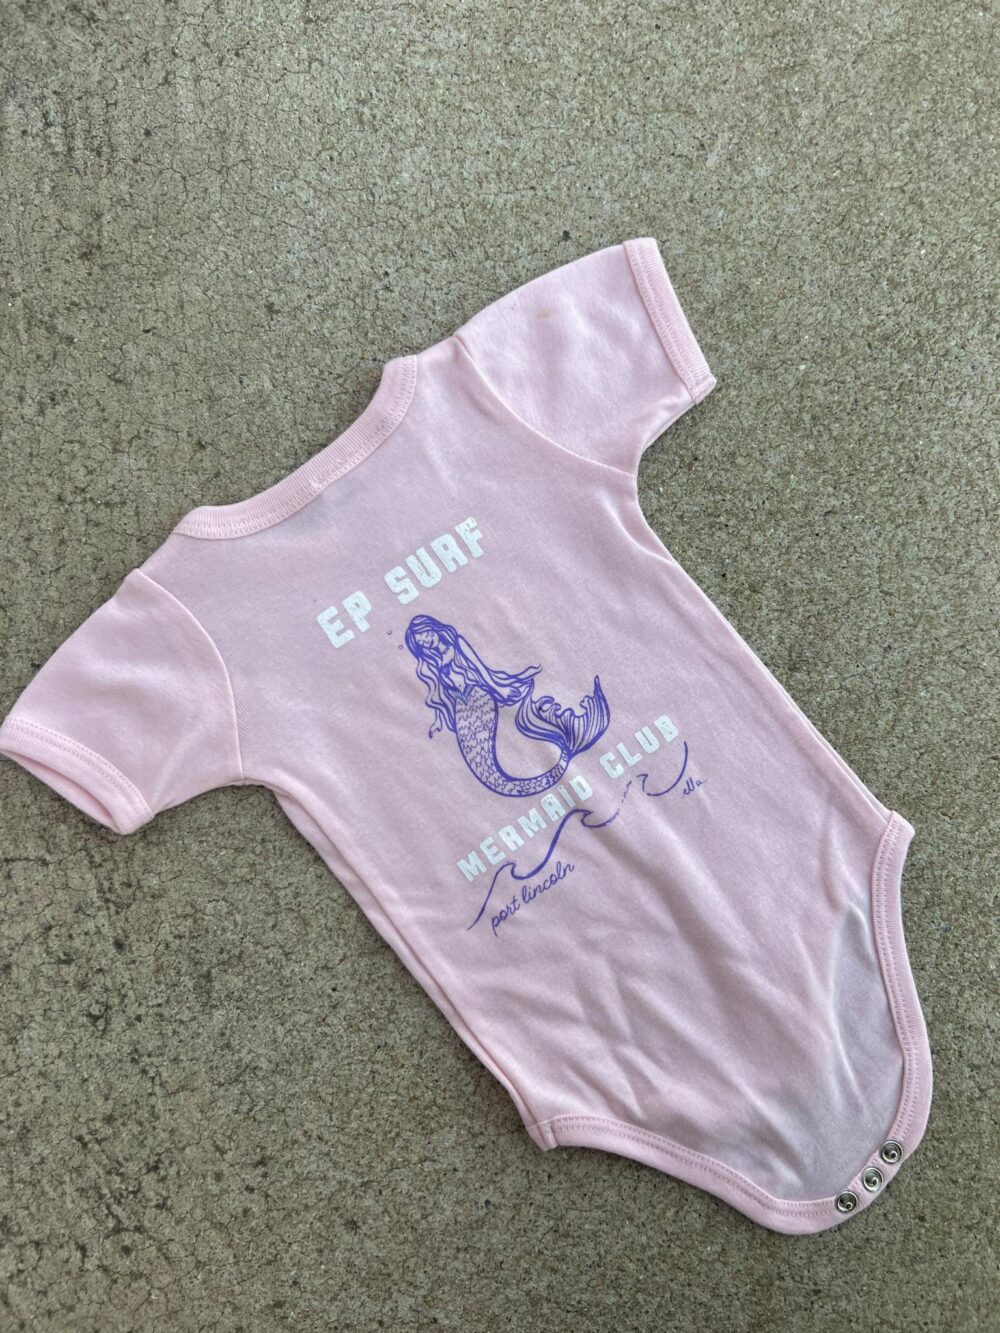 EPOBMER Pink/multi Ep Surf Ep Onesie B Mermaid Groms Onesies Clothing Clothing